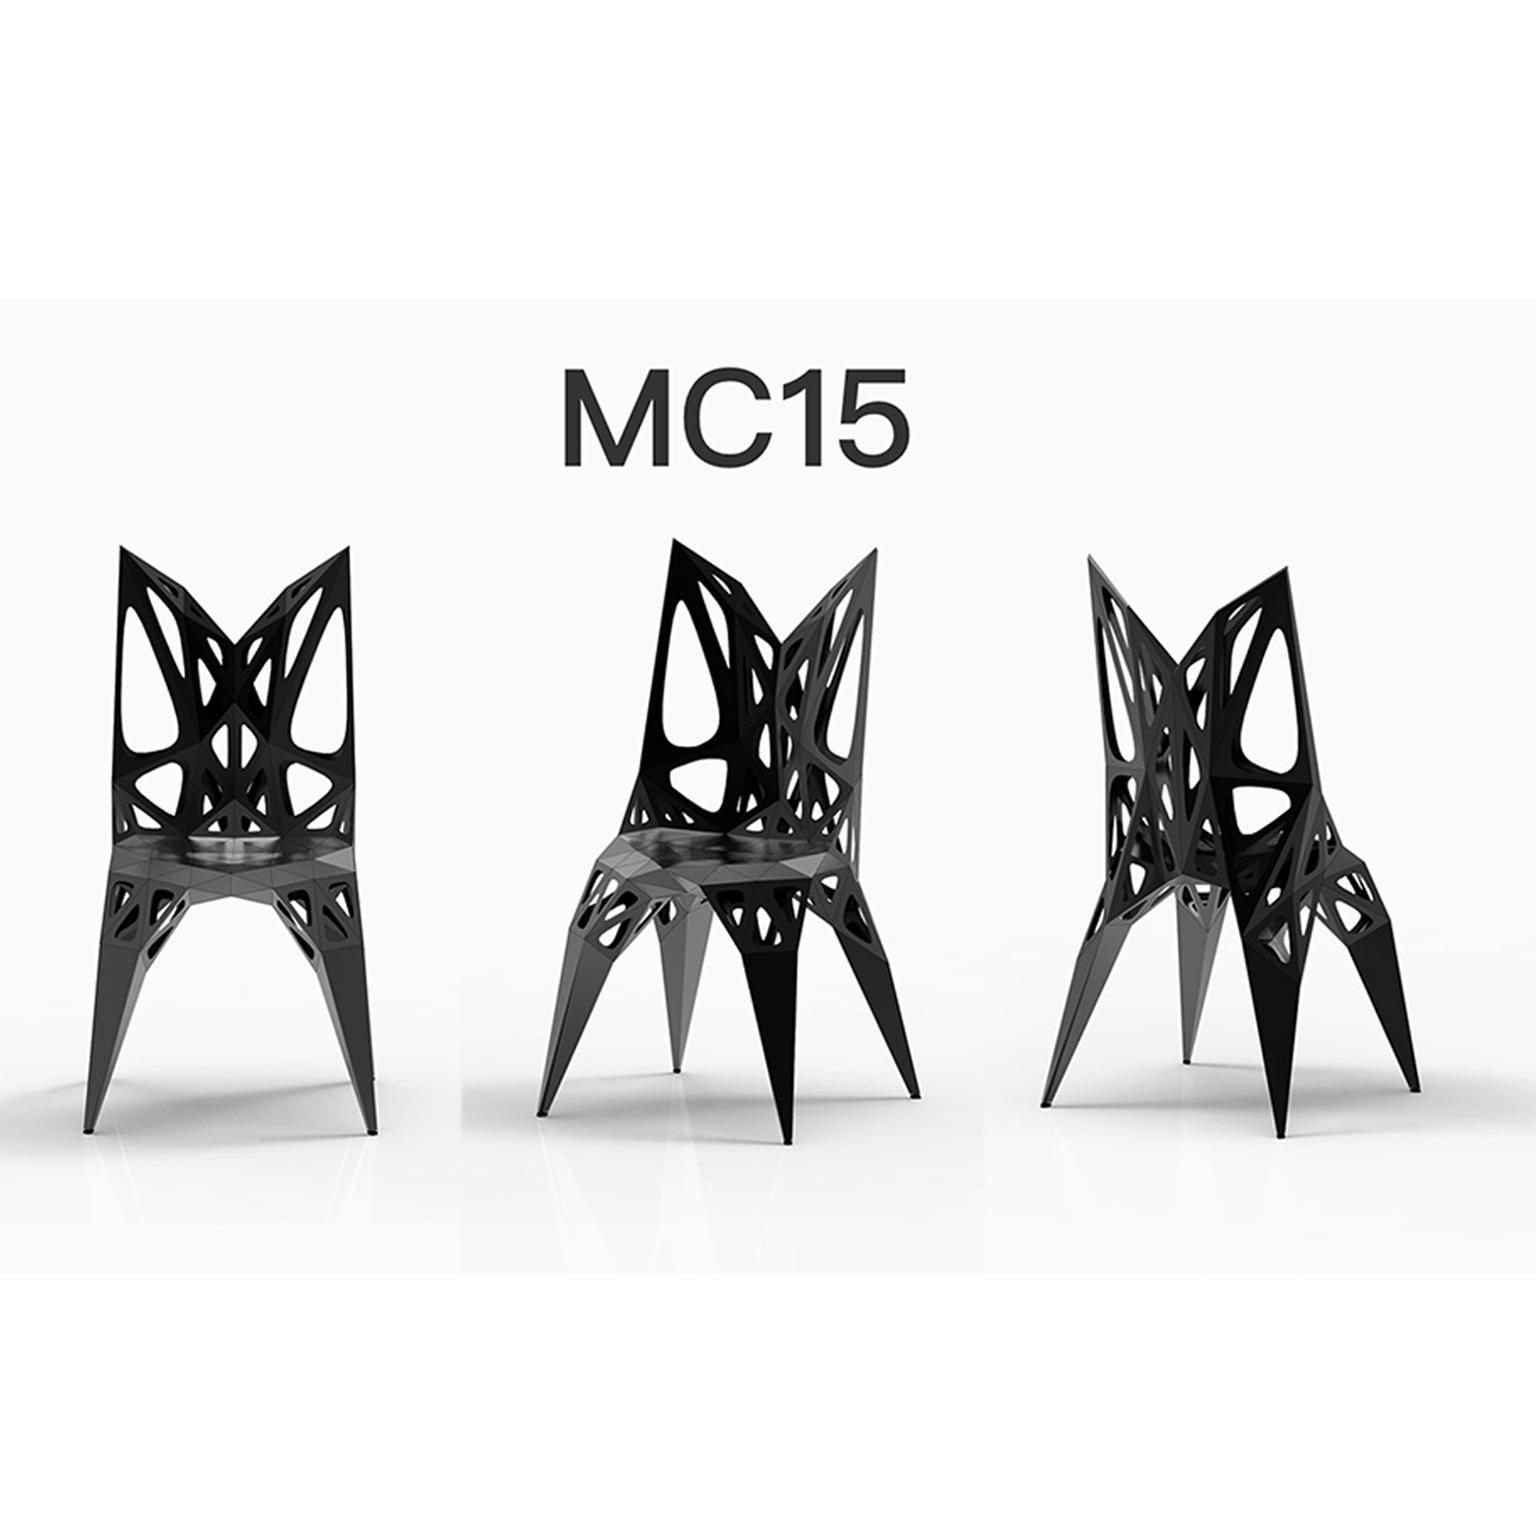 Anpassbar
outdoor+Indoor
3 offizielle Typen Stühle / verfügbar
solide
punkte
rahmen
2 Farben offiziell / verfügbar / Ausführung in poliert/matt
schwarz
silber

Der Möbeldesigner Zhoujie Zhang ist bekannt für die Integration von automatisiertem